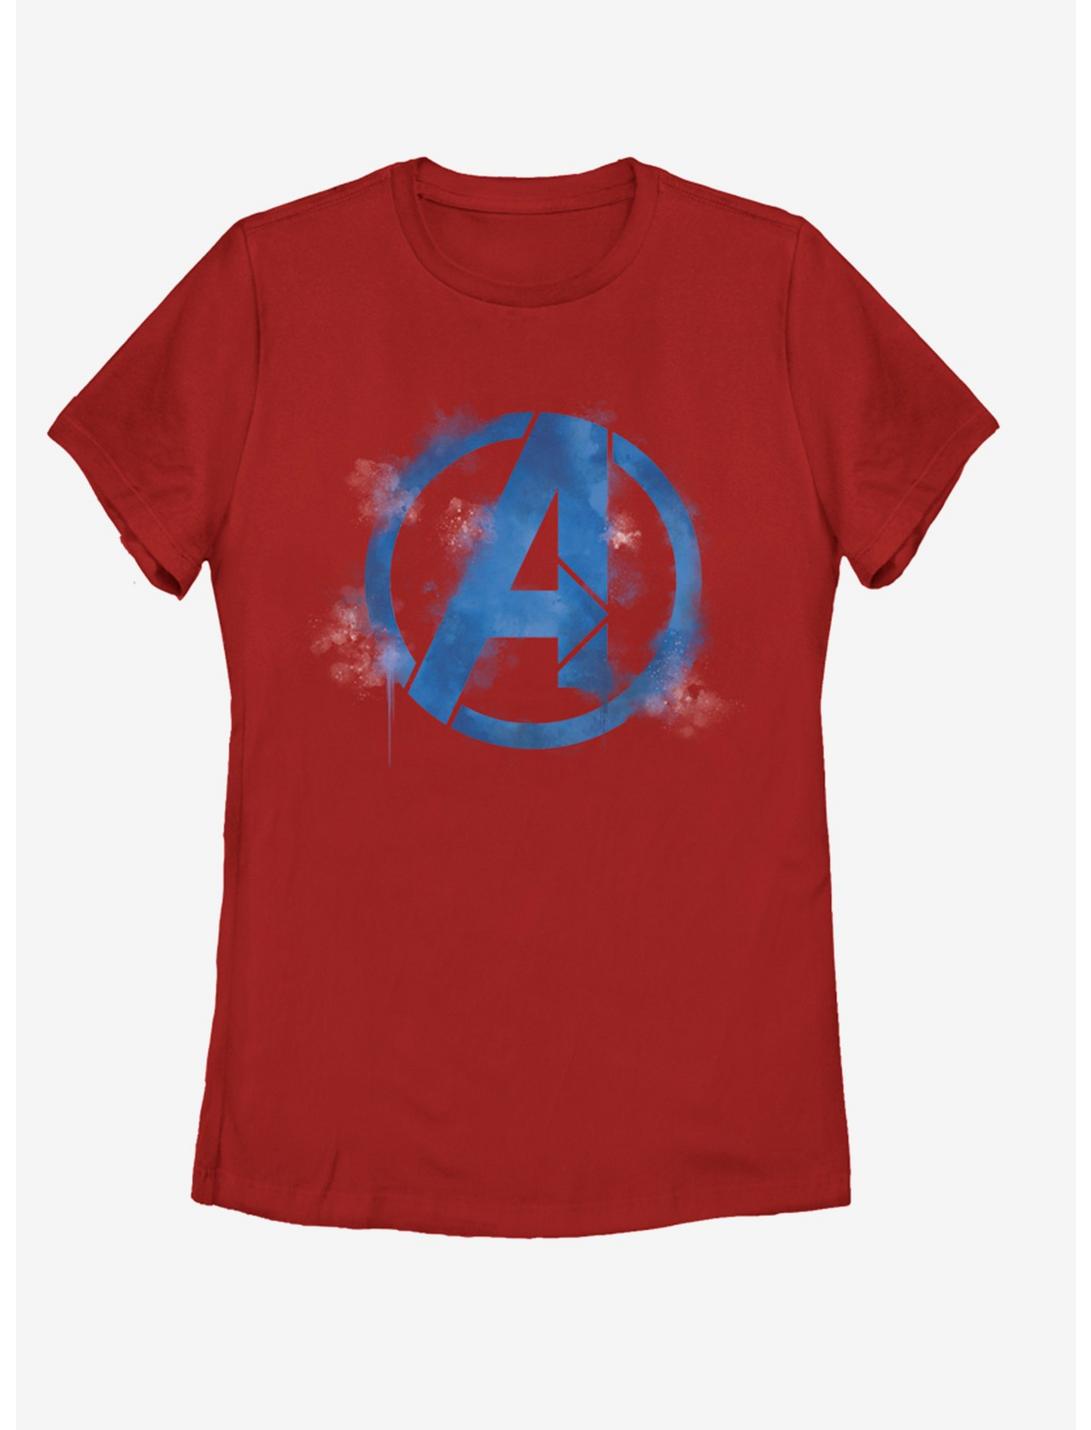 Marvel Avengers: Endgame Avengers Spray Logo Womens T-Shirt, RED, hi-res